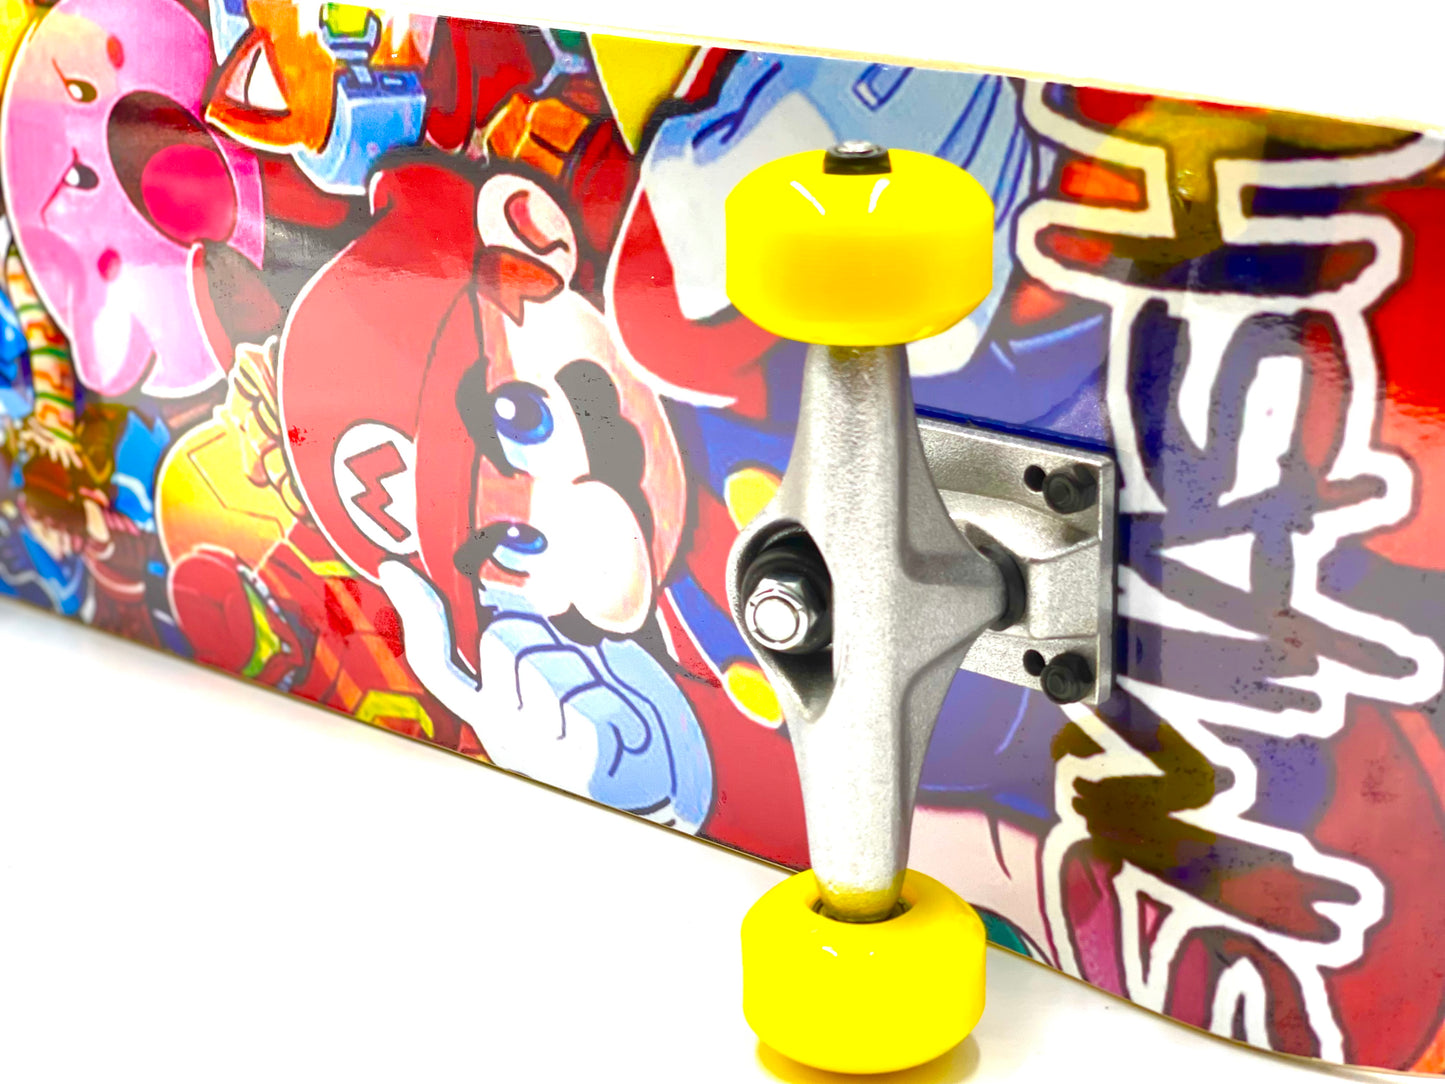 Super Smash Brothers Skateboard